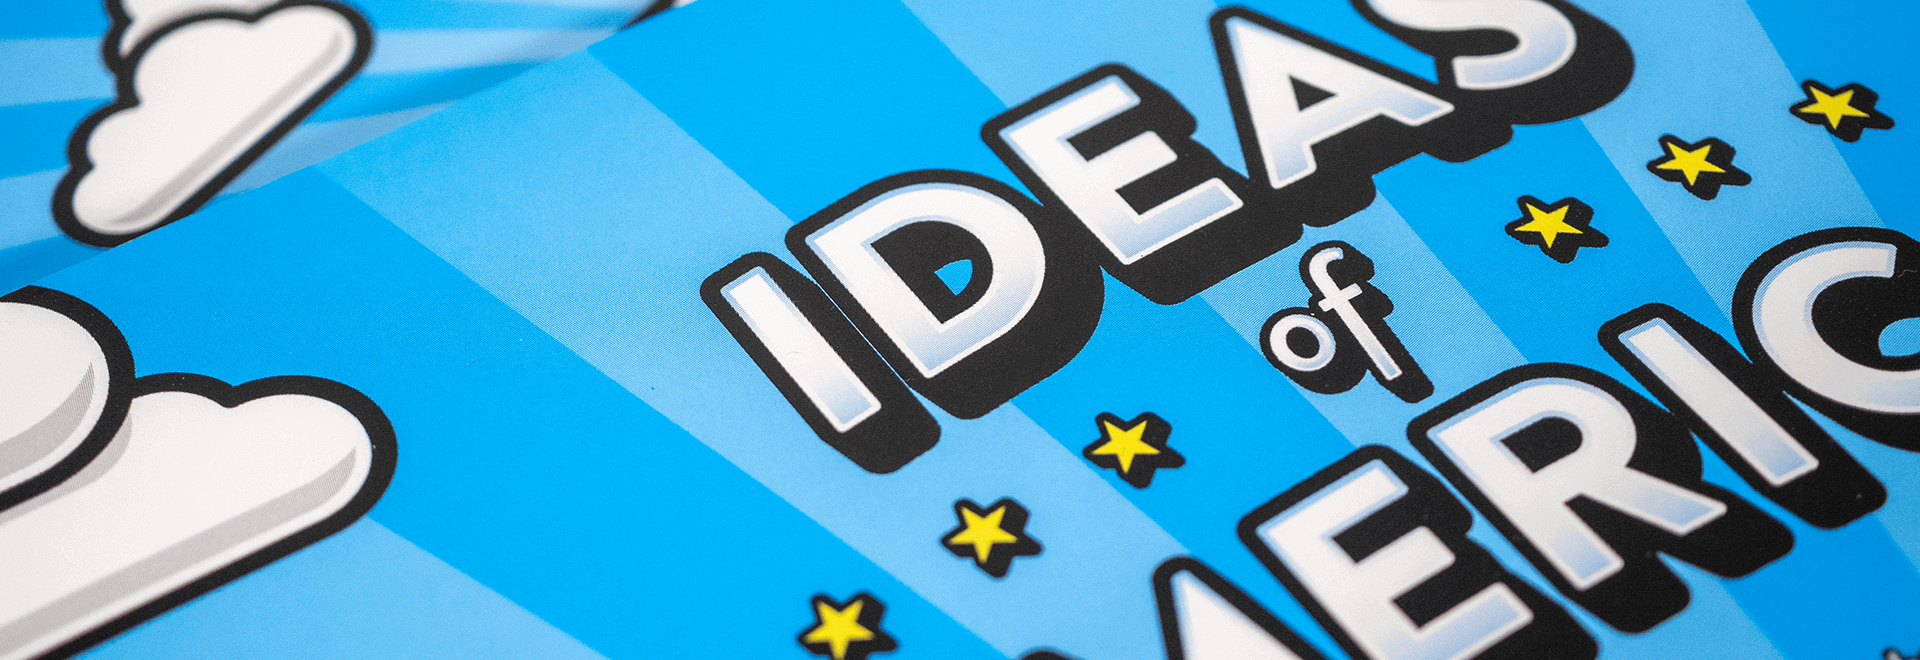 IdeasOfAmerica_header